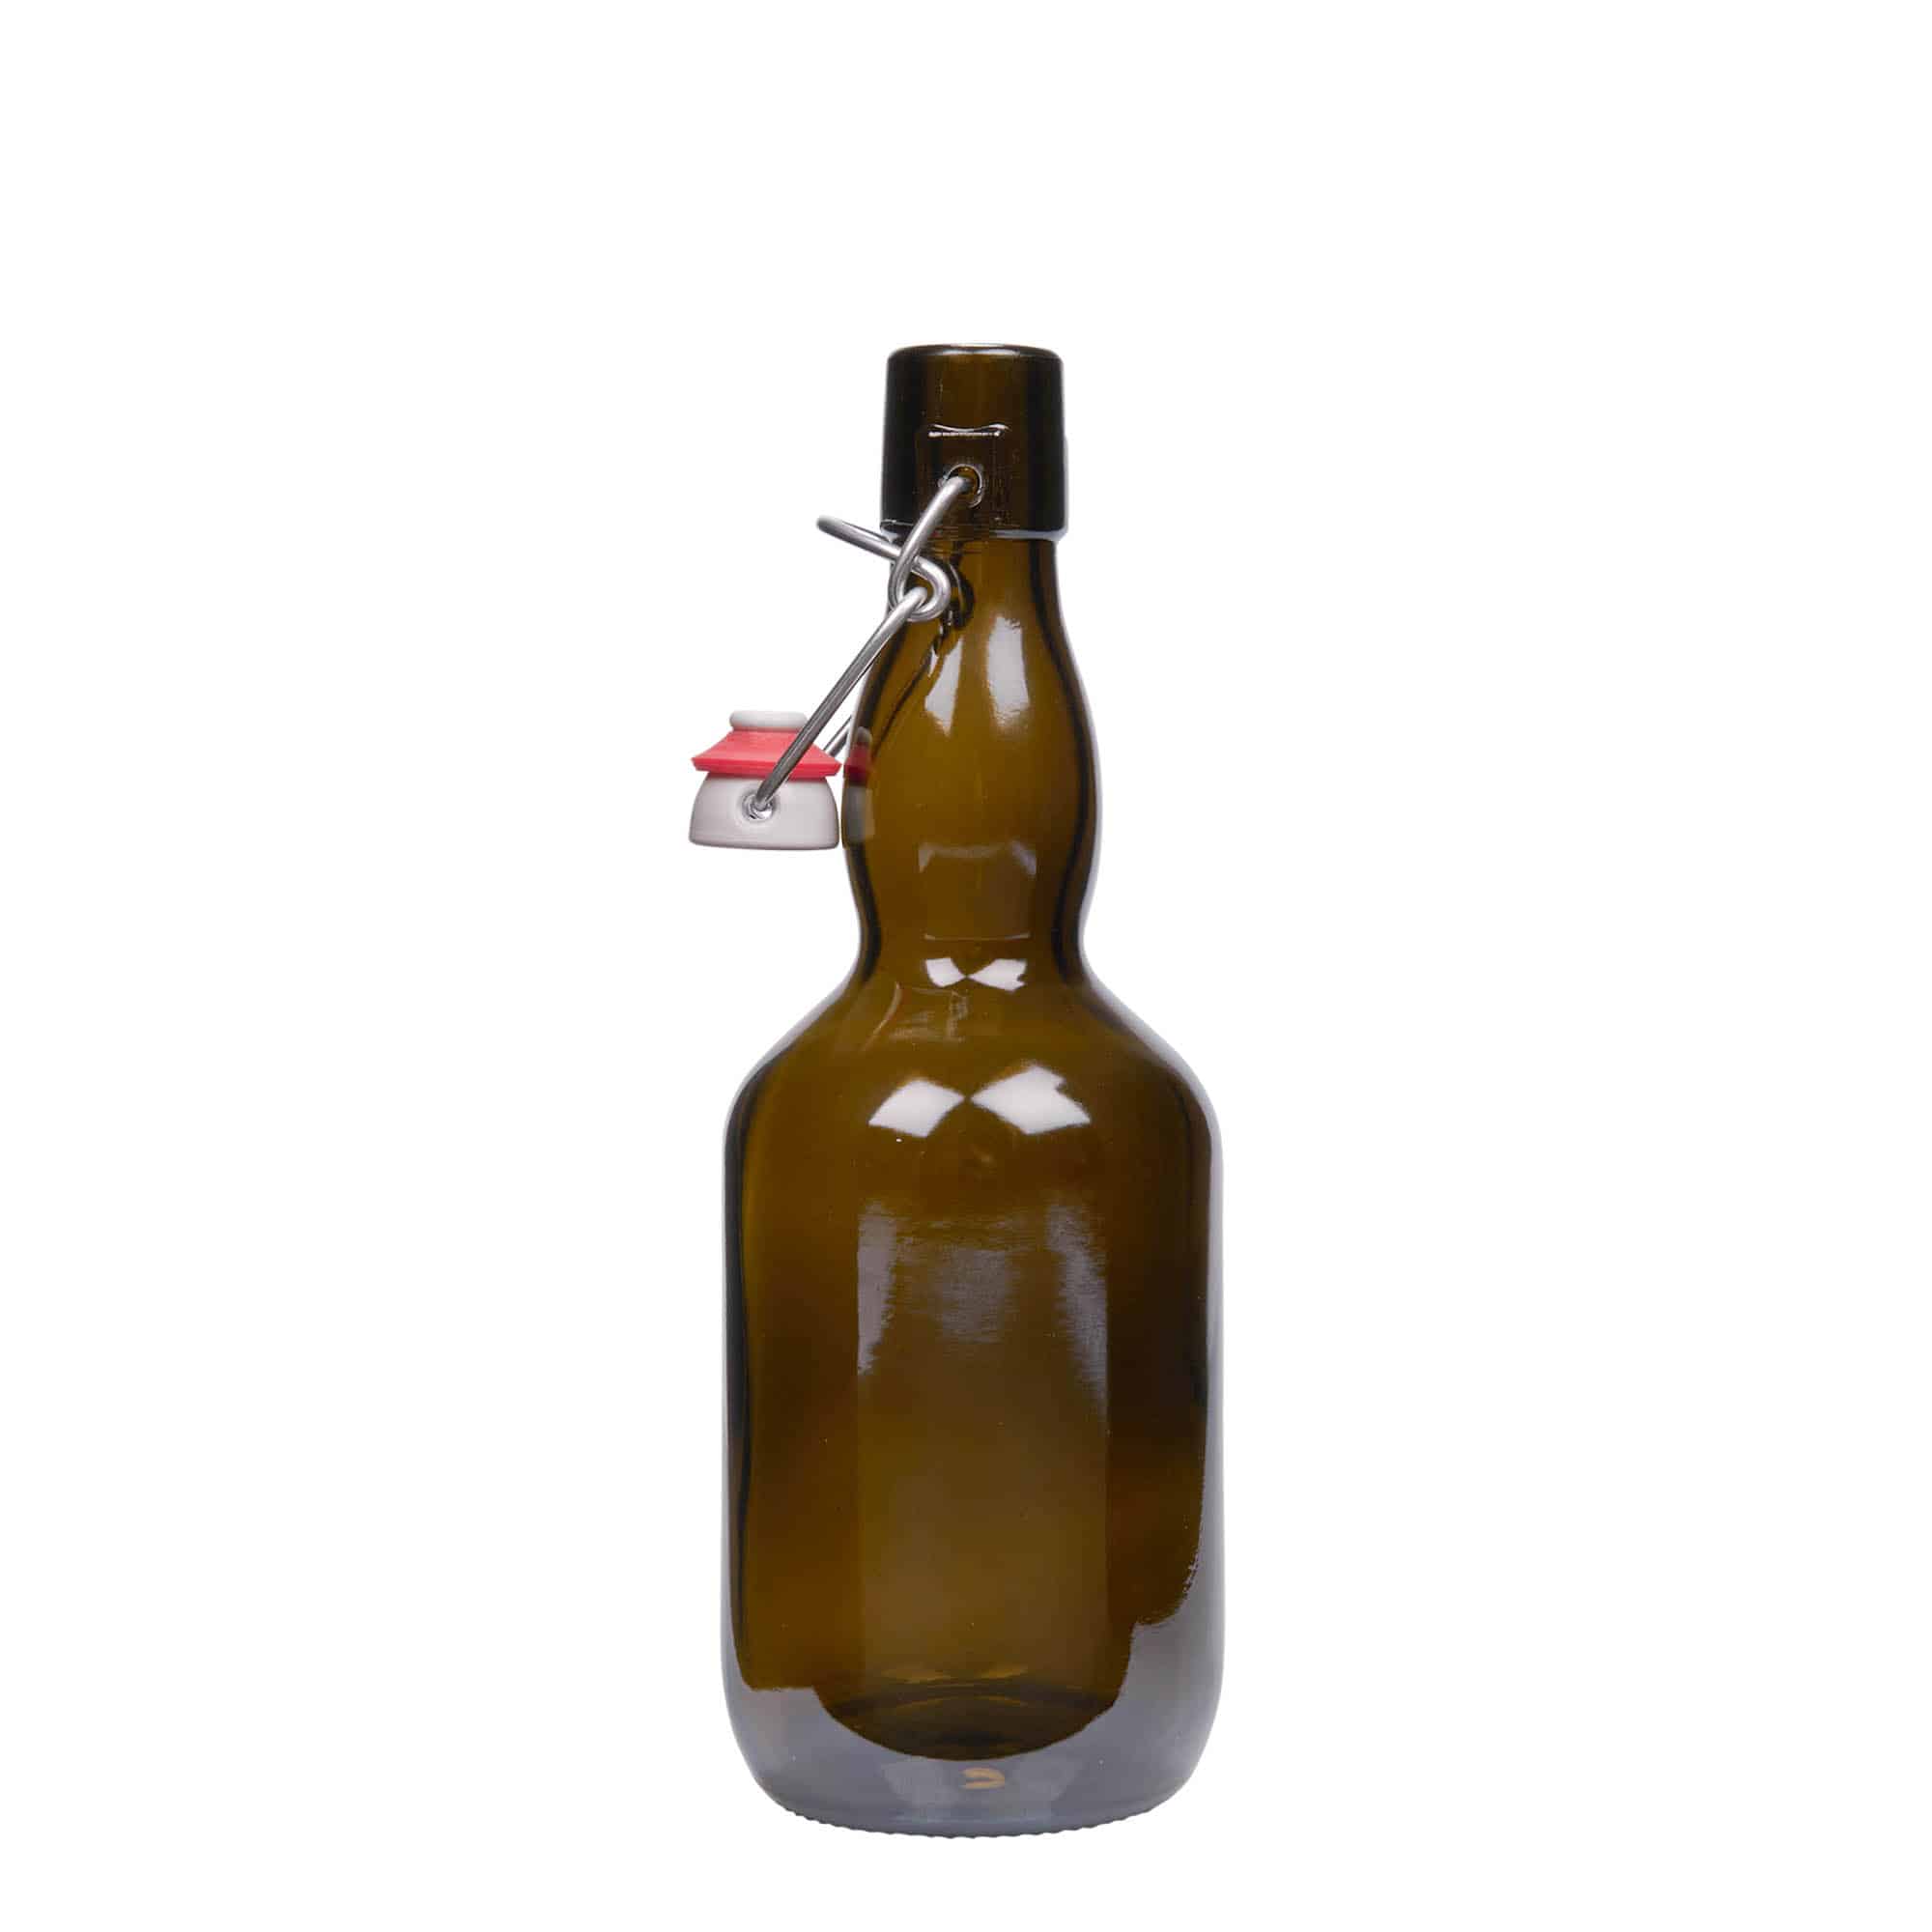 Bierflesje gewelfde hals, 500 ml, glas, antiekgroen, monding: beugelsluiting